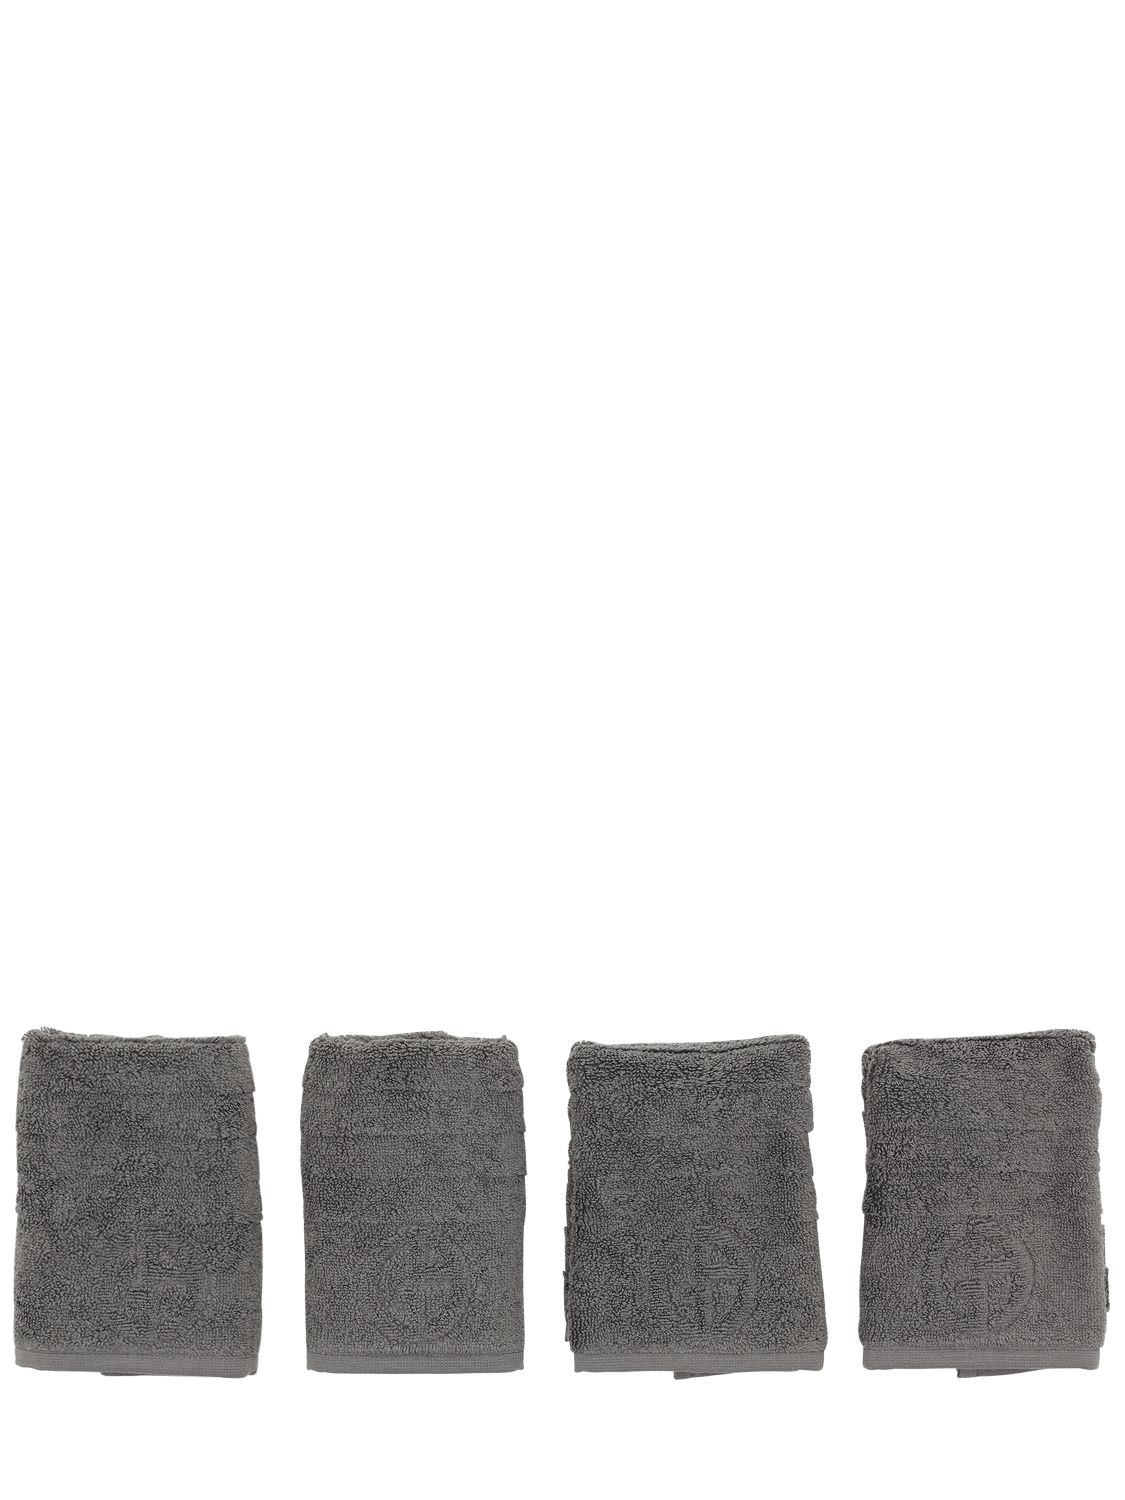 Armani/casa Dorotea Cotton Towel Set In Dark Grey